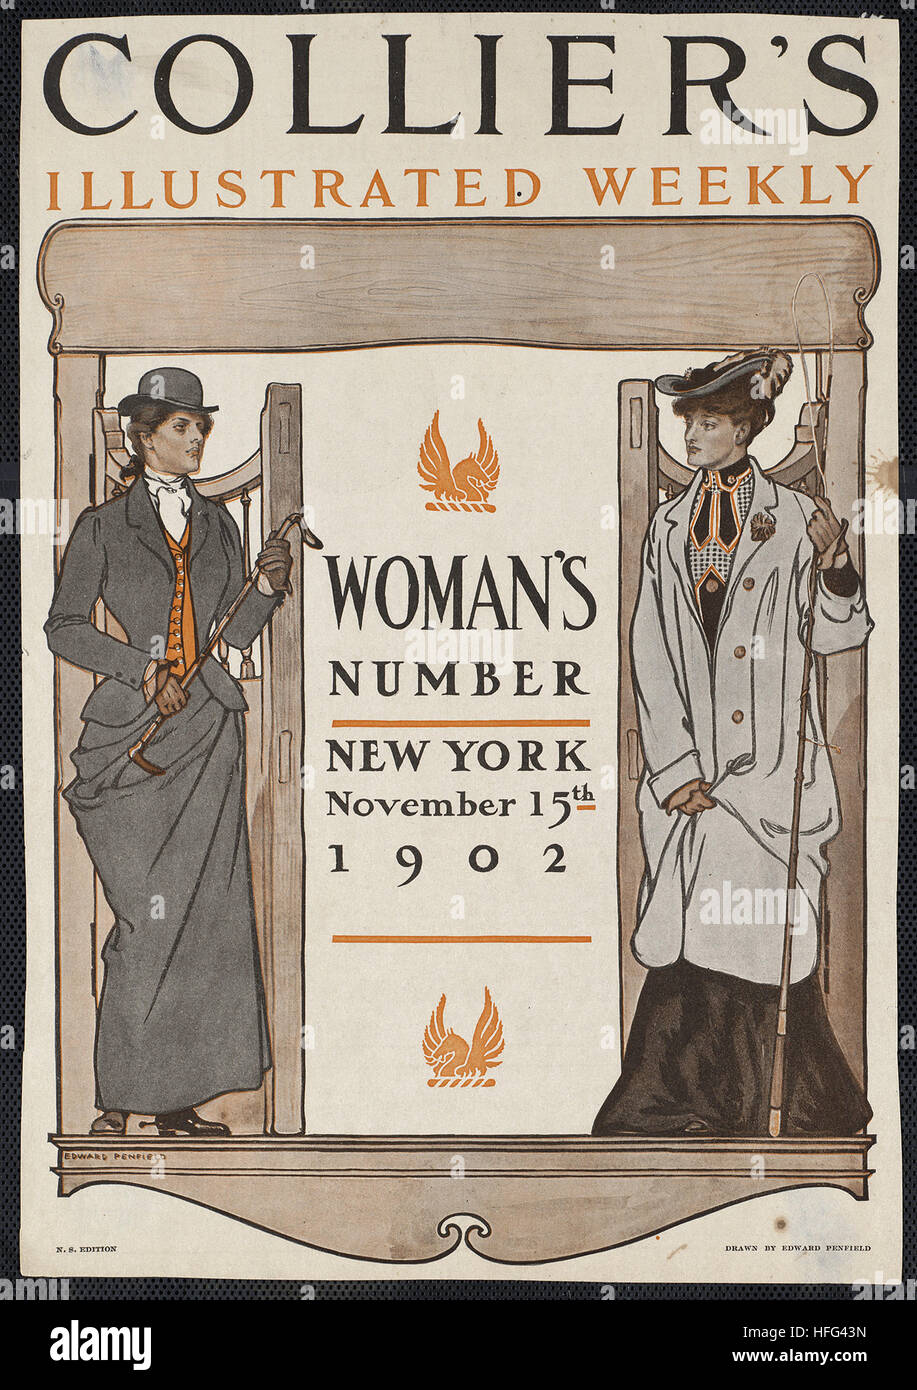 Collier's illustrated weekly. Numéro de la femme, New York, le 15 novembre 1902. Banque D'Images